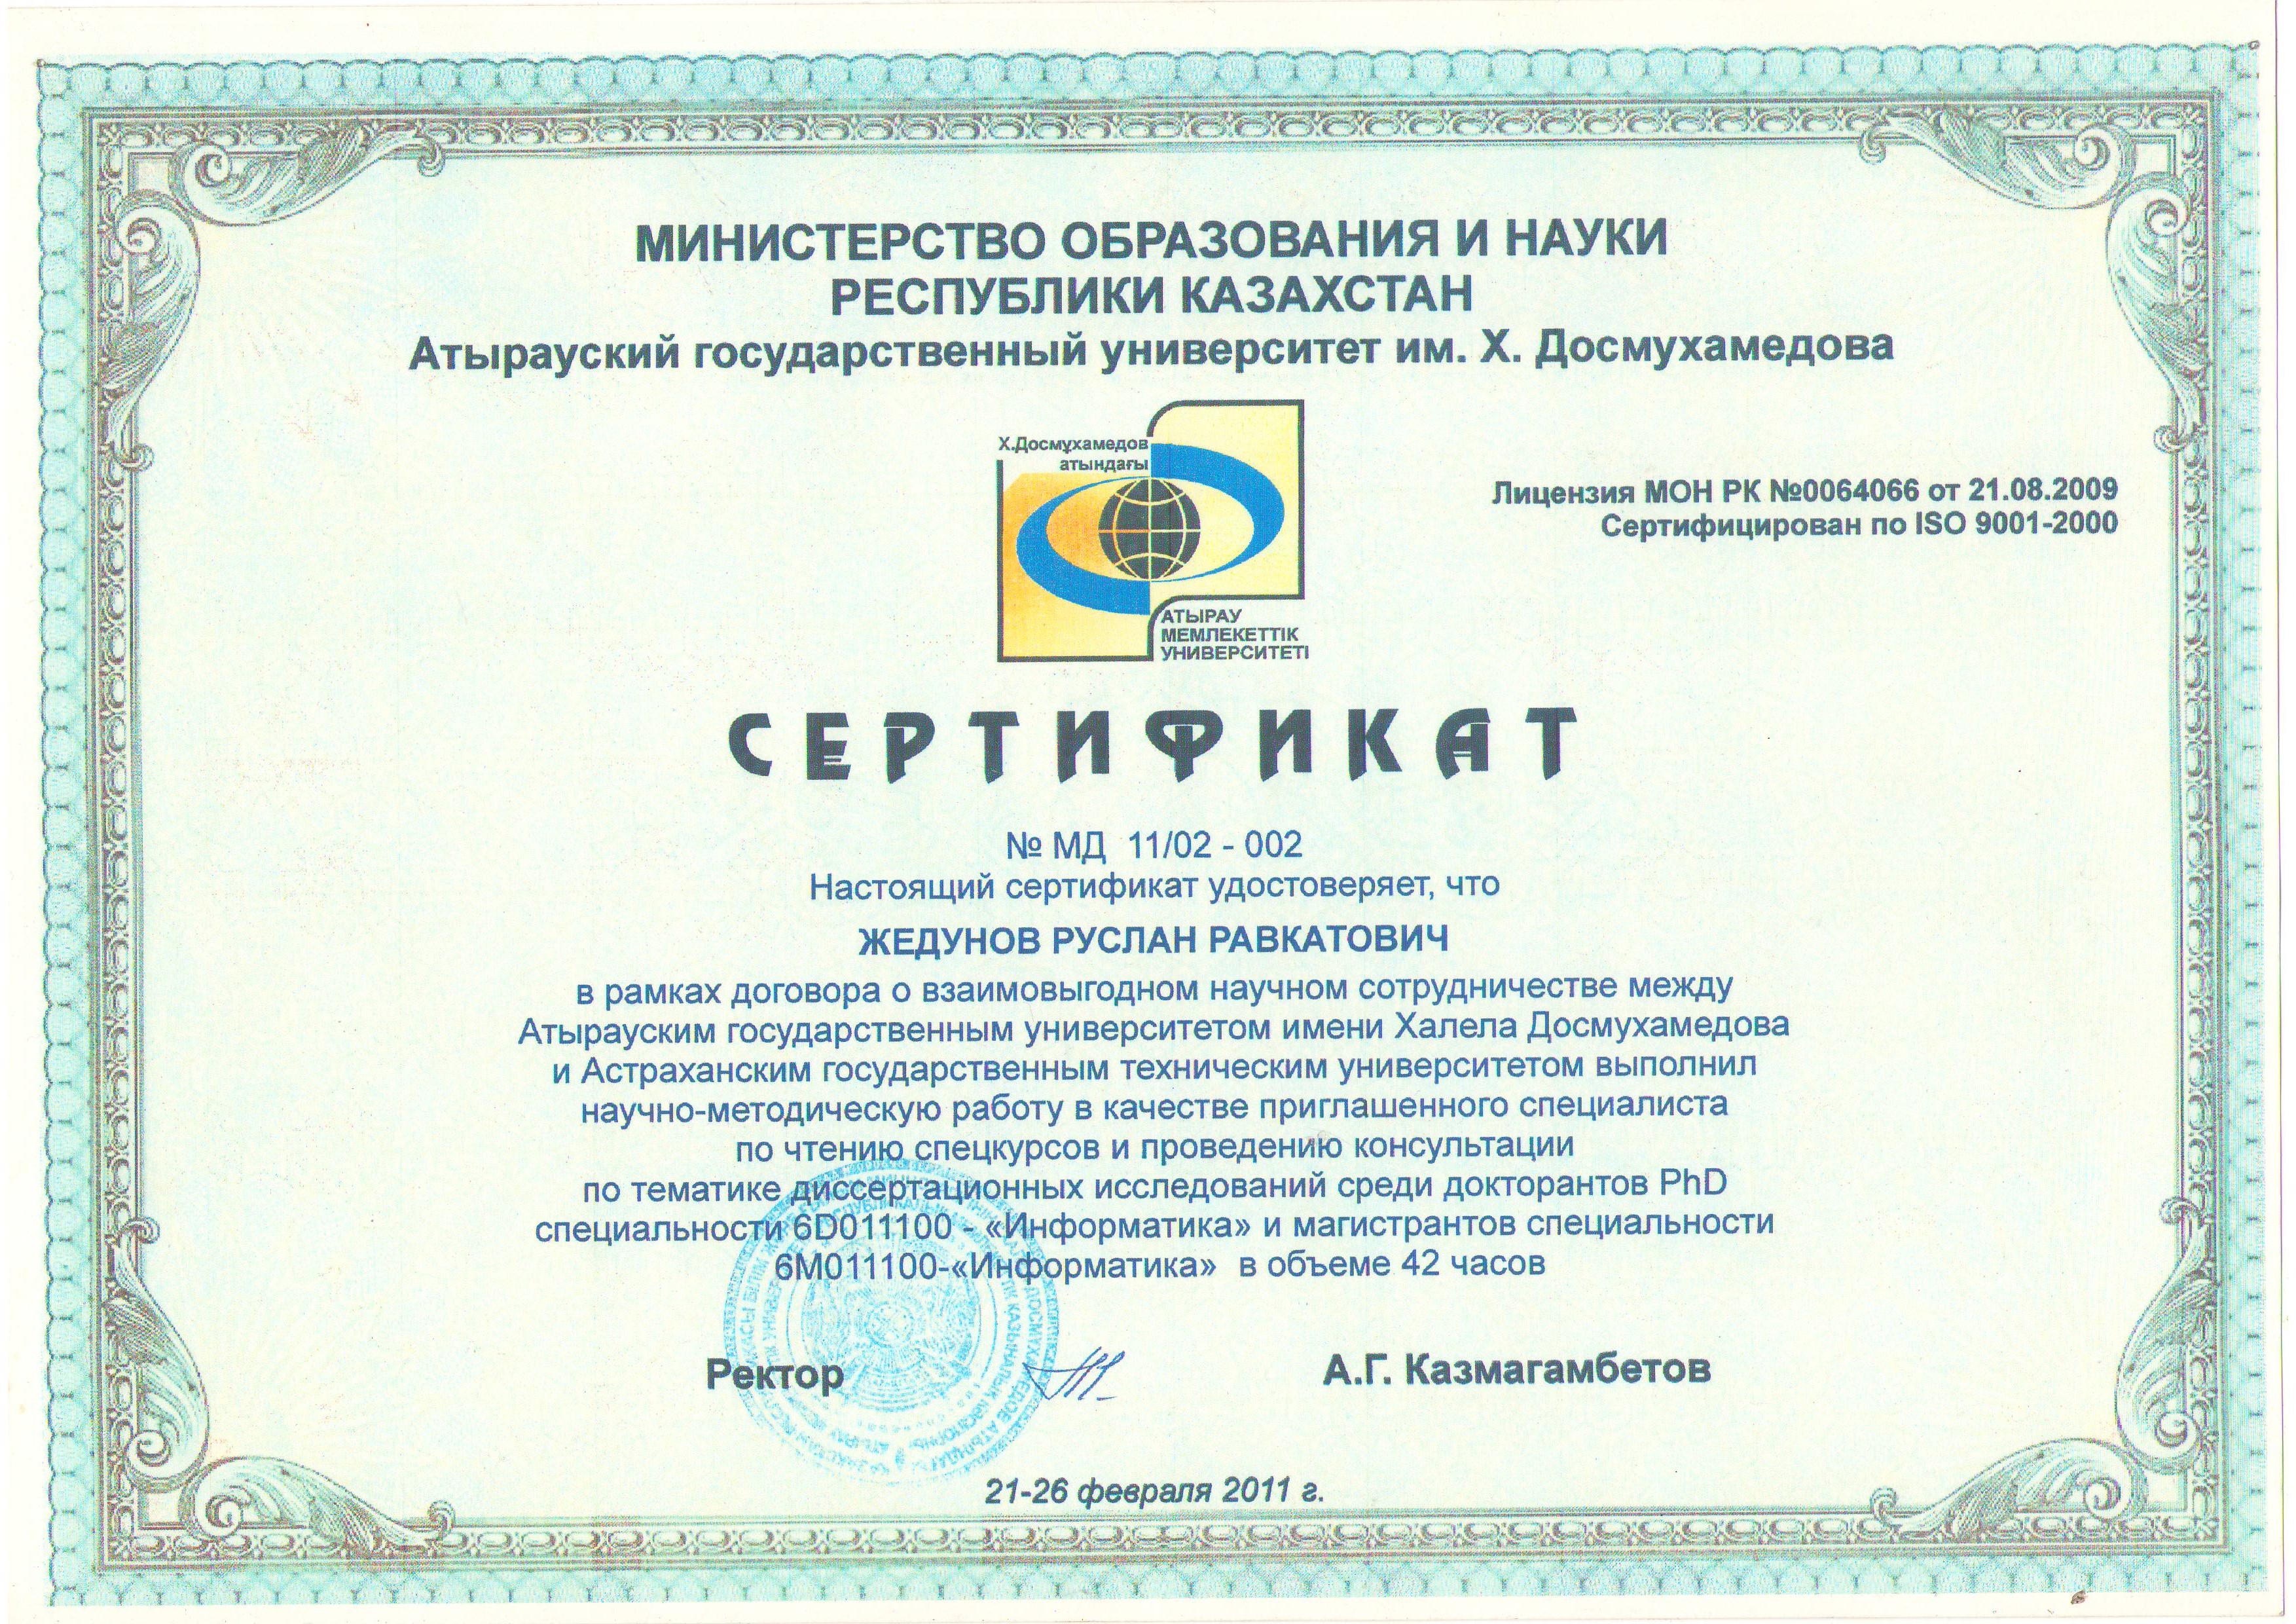 Сертификат. Сертификат портал знания. Сертификаты на сайте. Поддержка российских сайтов с сертификатами